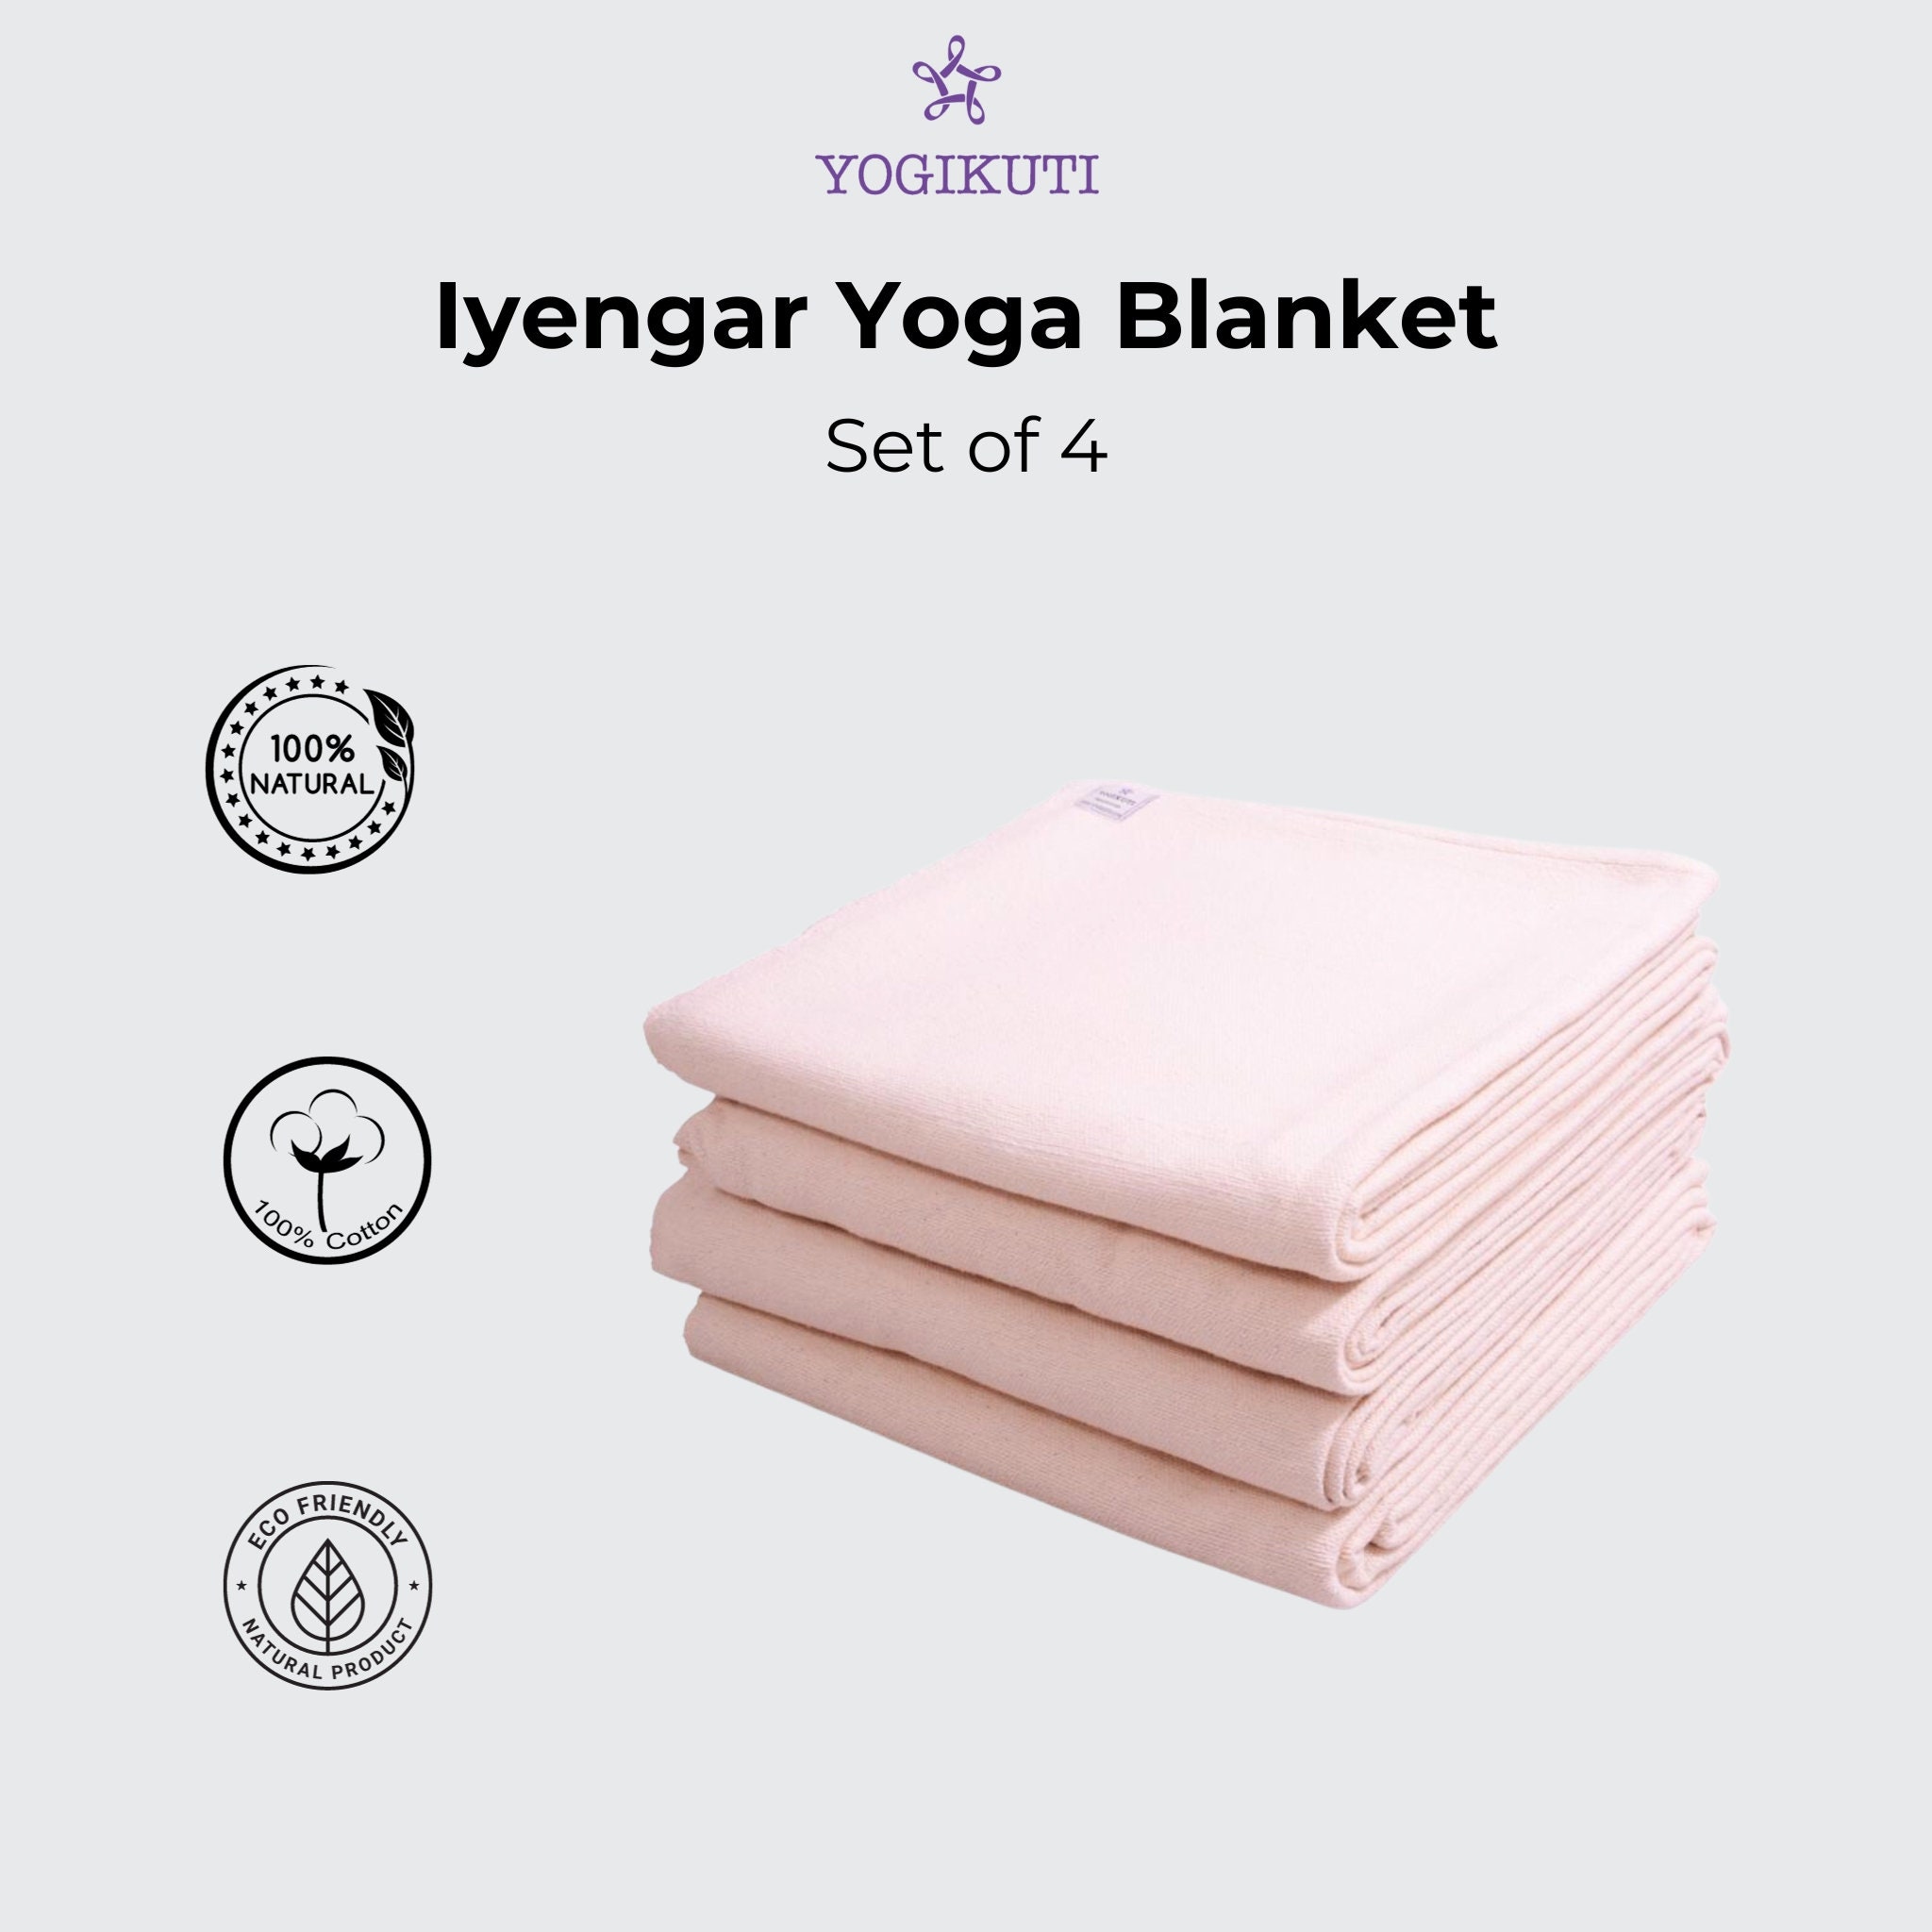 Iyengar Cotton Yoga Blanket Set of 4pc Yoga Blanket. Iyengar Yoga